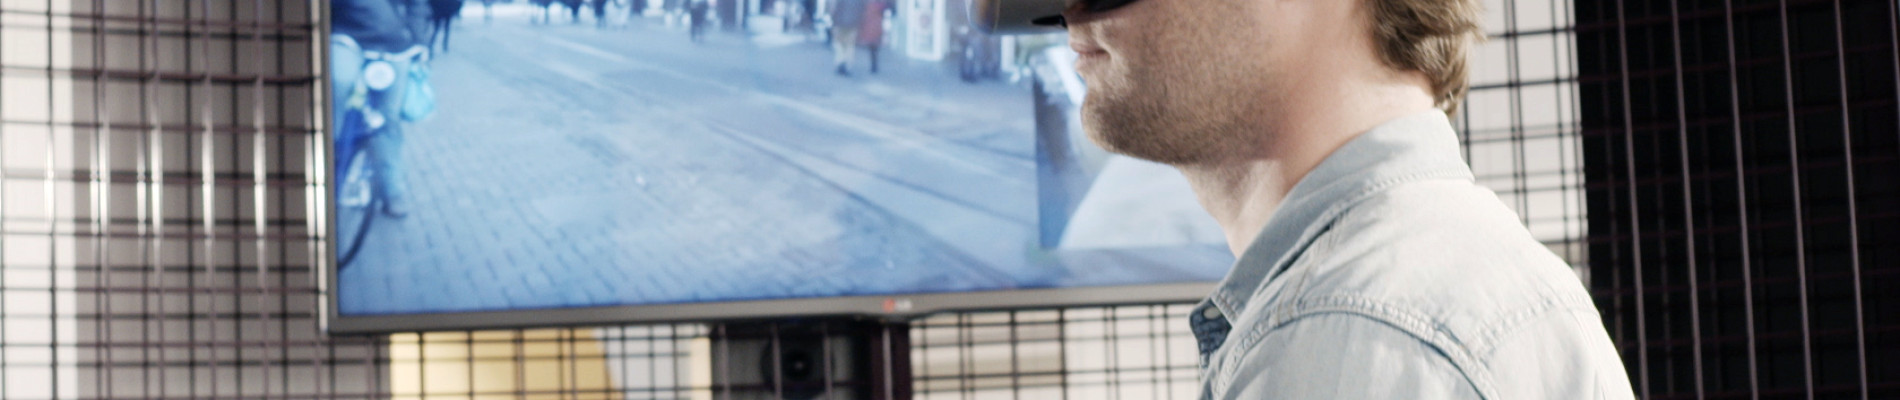 Man loopt met VR-bril op de loopband, op het scherm naast hem kun je meekijken met zijn zicht